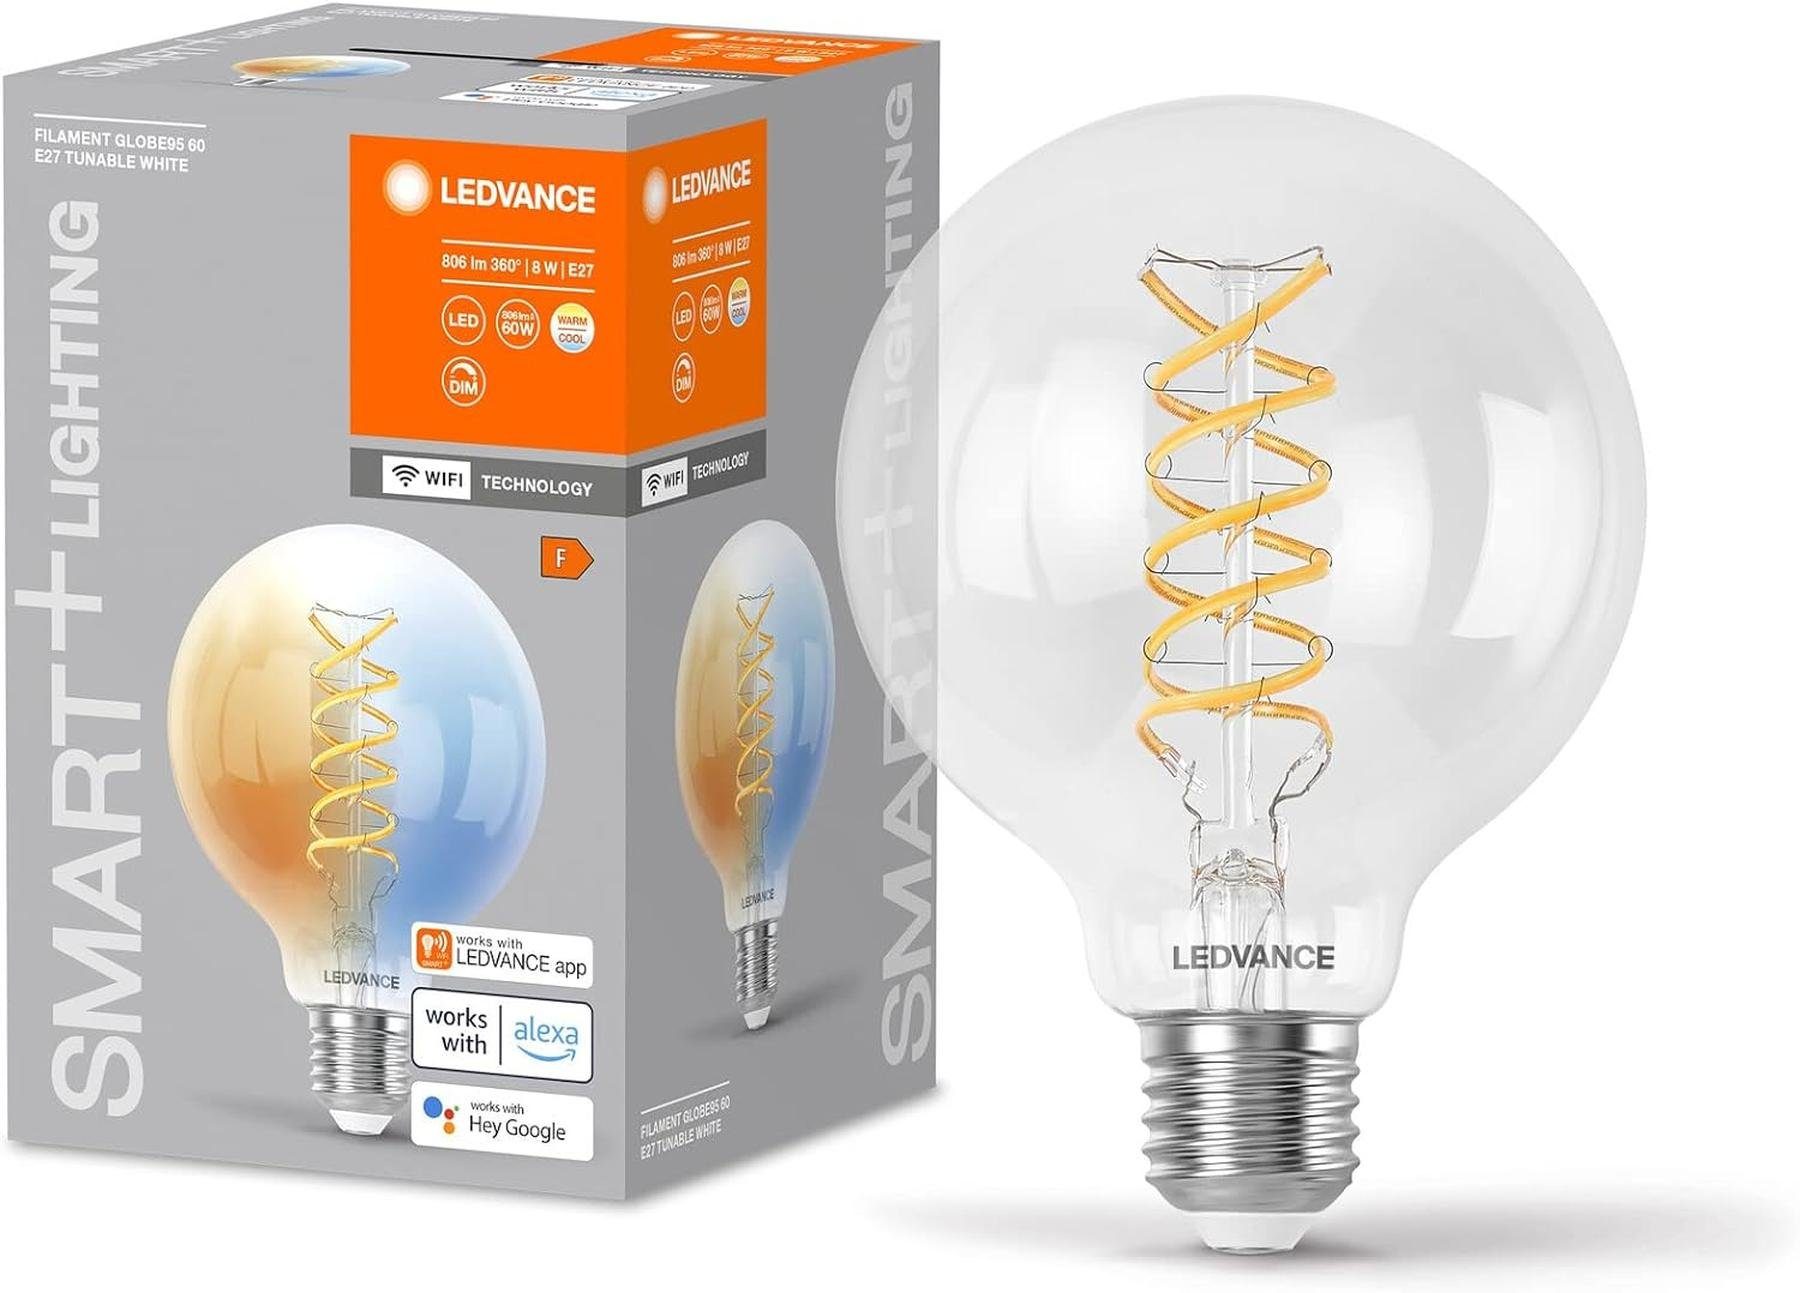 Ledvance LED-Leuchtmittel LEDVANCE SMART+ WIFI LED-Lampe, Weißglas, 8W, 806lm, Kugel-Form mit 95